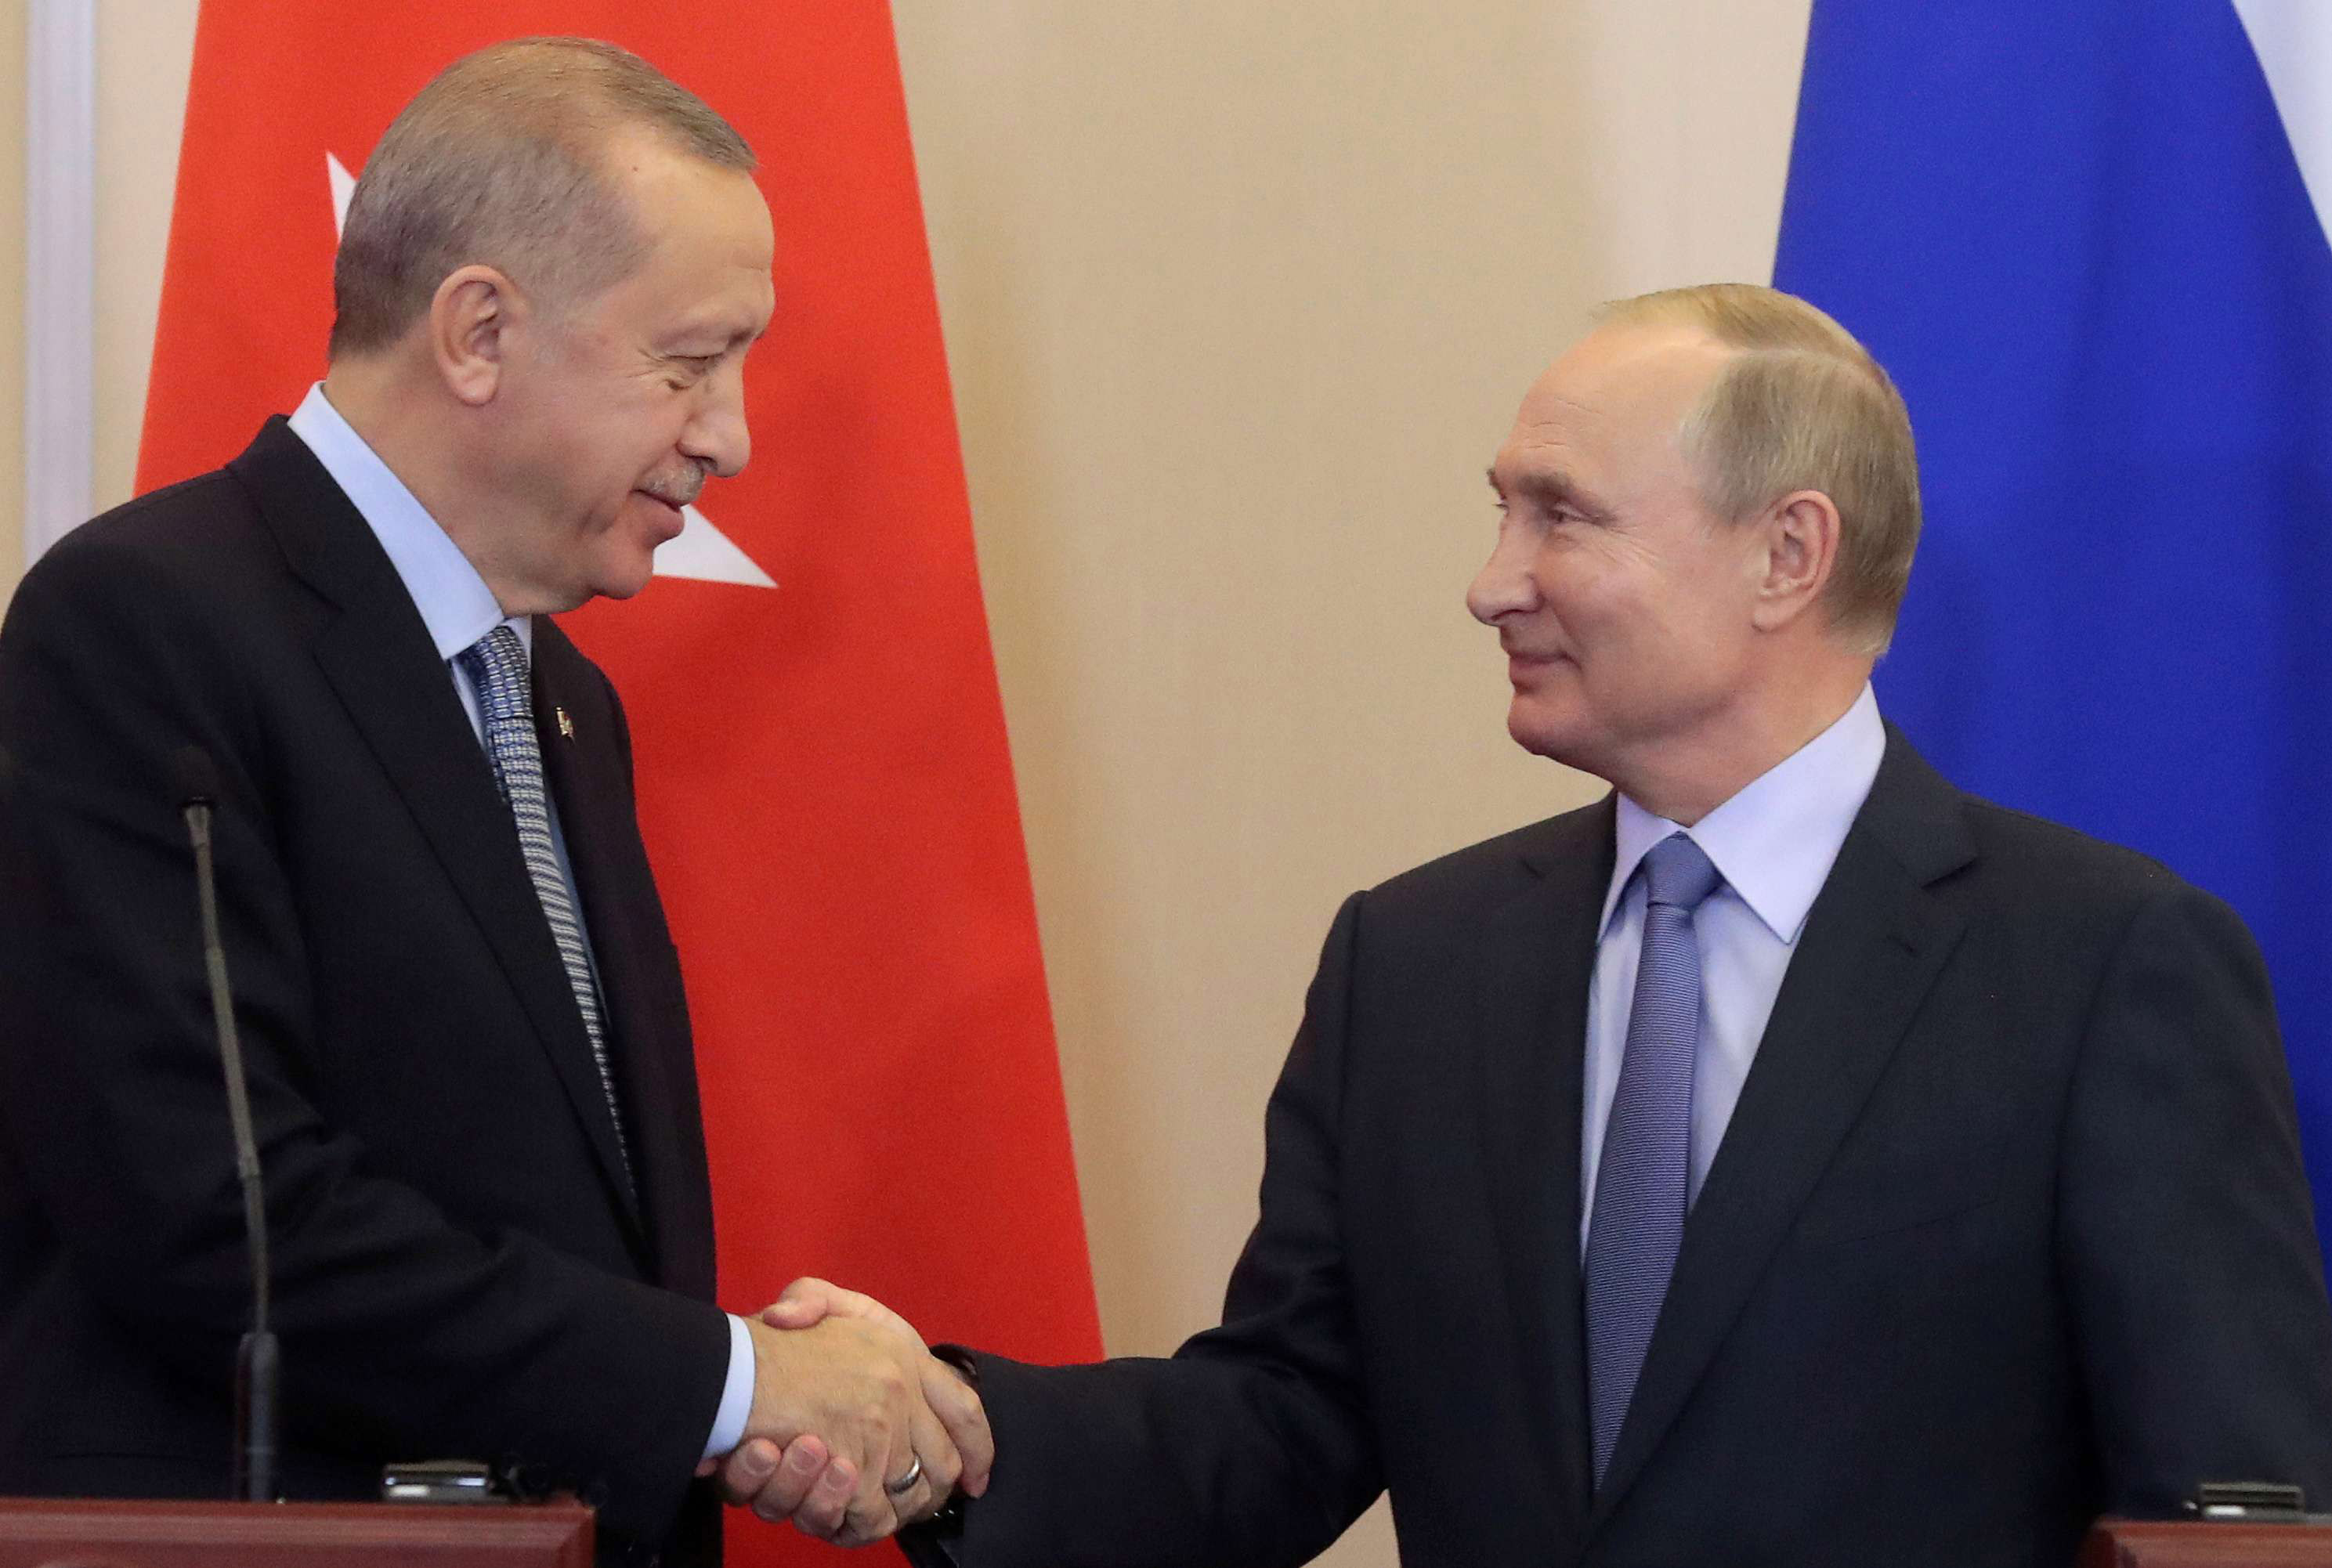 أردوغان يعرض على بوتين إعادة 'التجربة السورية' في ليبيا